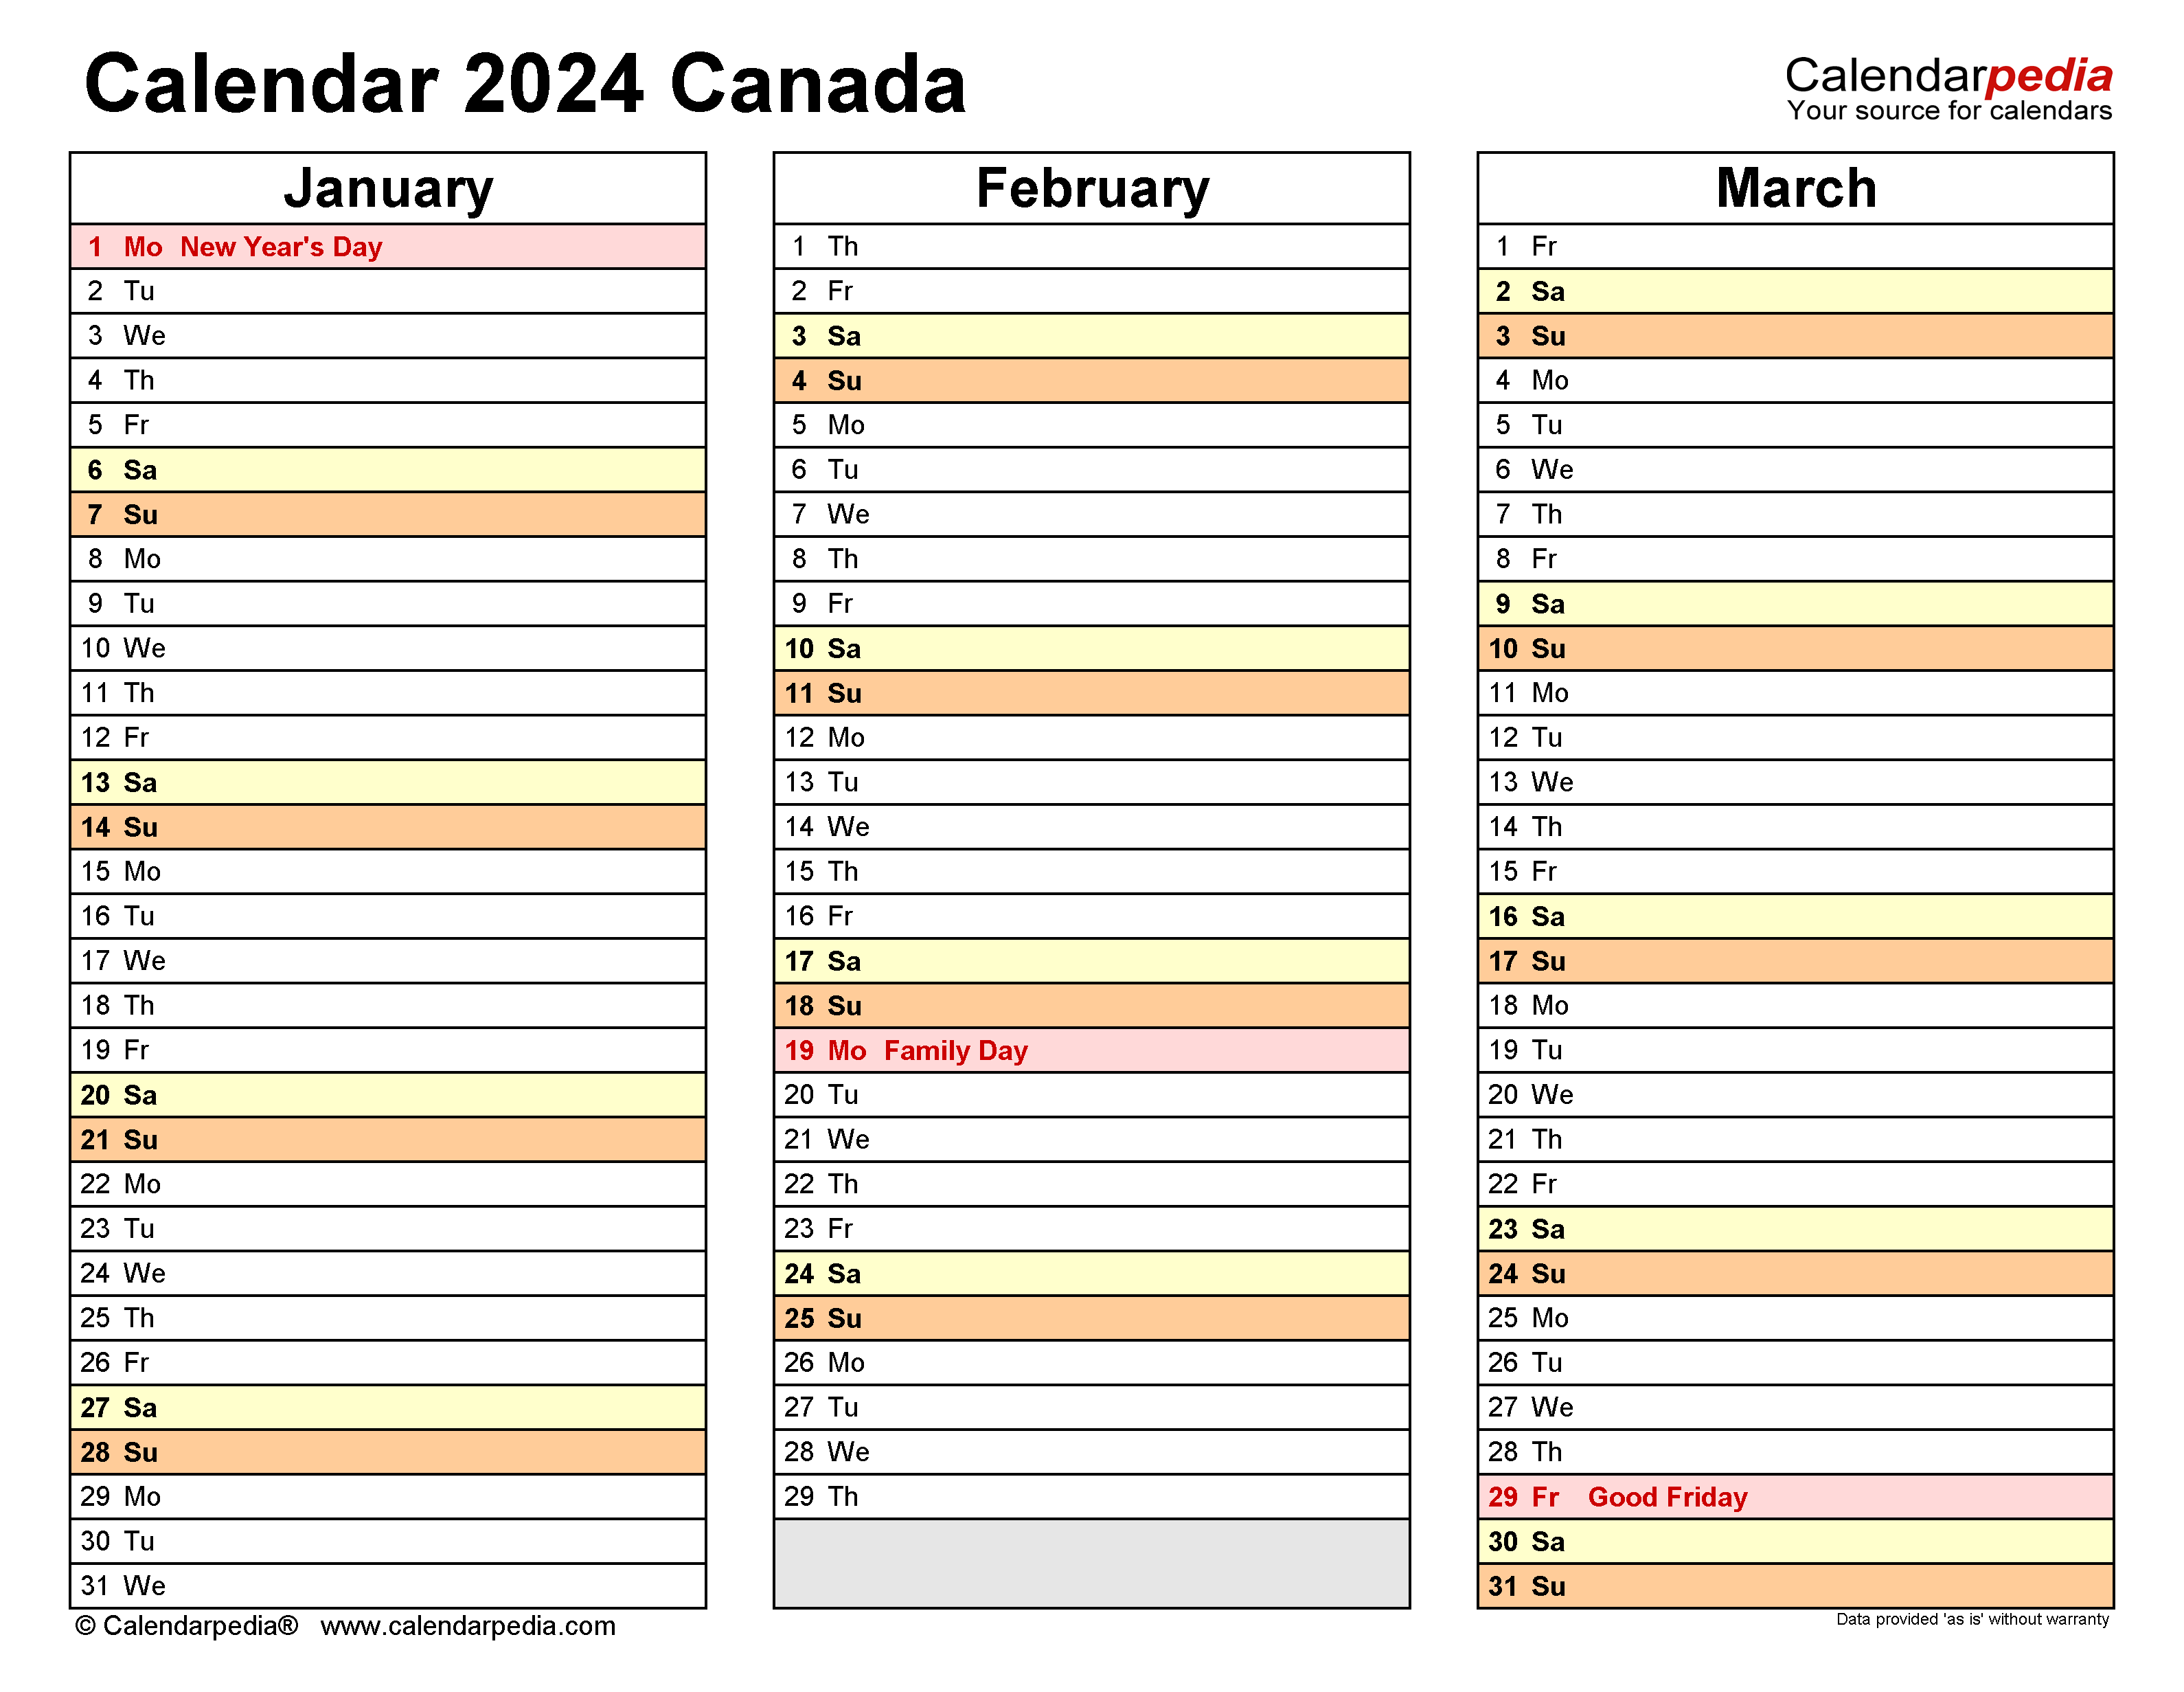 2024 Calendar Canada Printable Pdf 2024 CALENDAR PRINTABLE - Free Printable 2024 Canada Calendar With Holidays